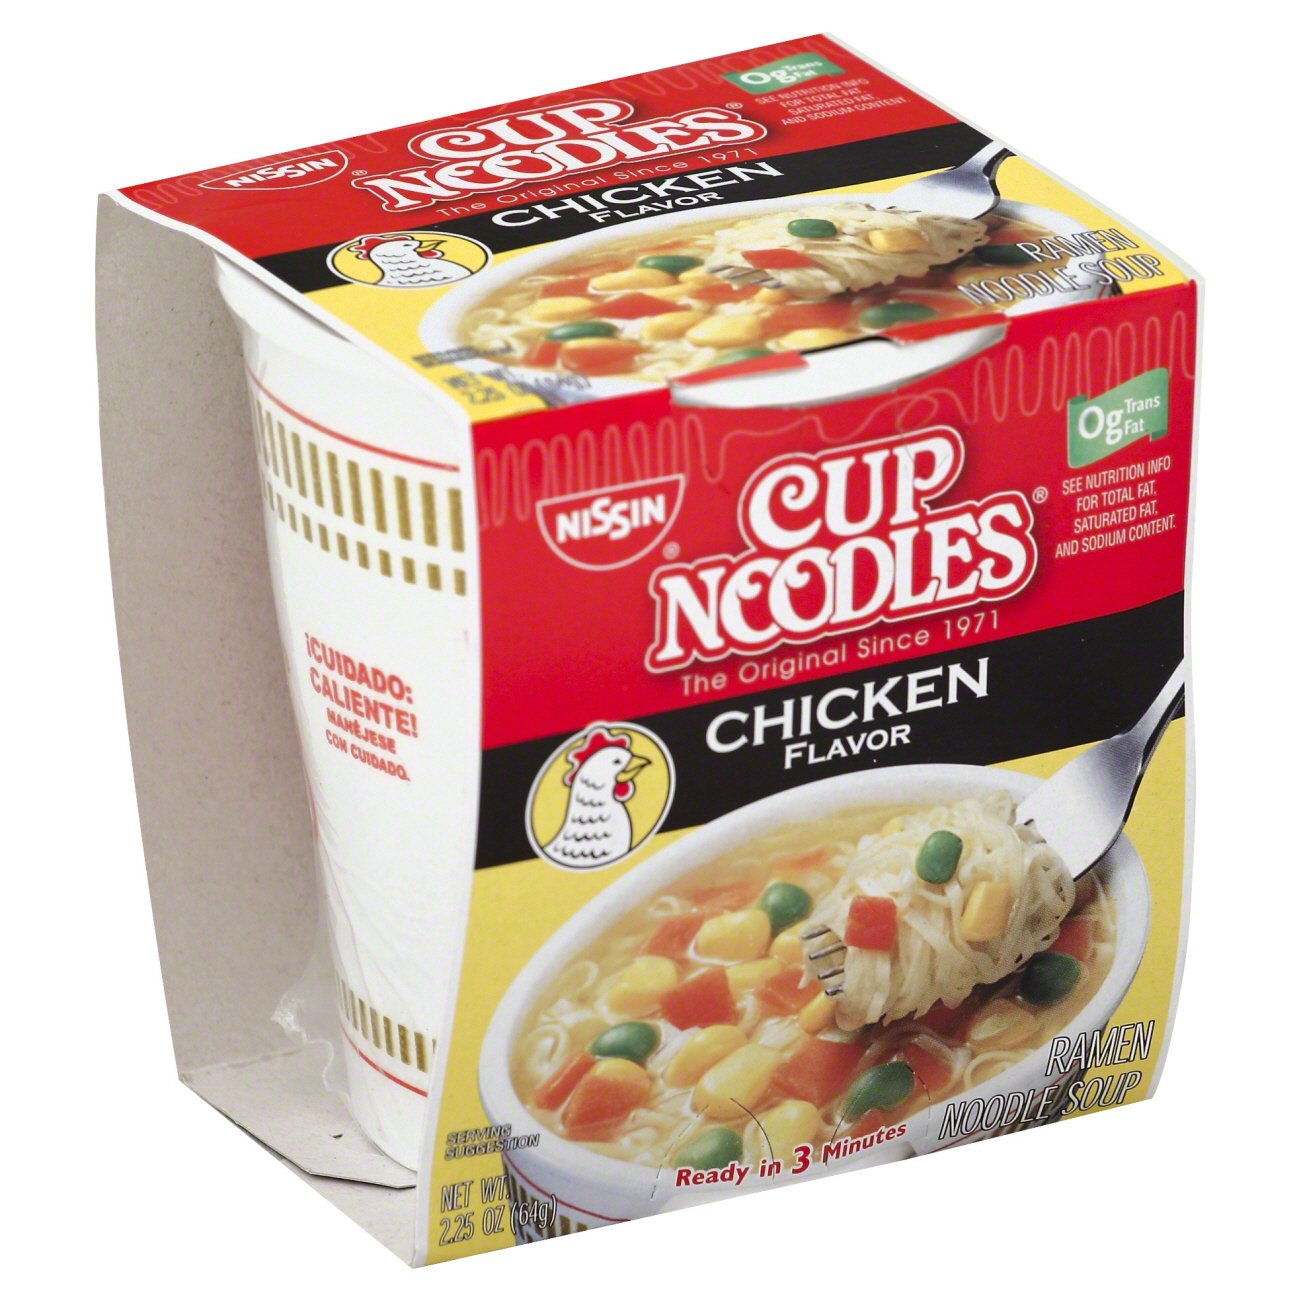 Nissin Cup Noodles Chicken Flavor Noodle Soup - Shop Soups & Chili at H-E-B